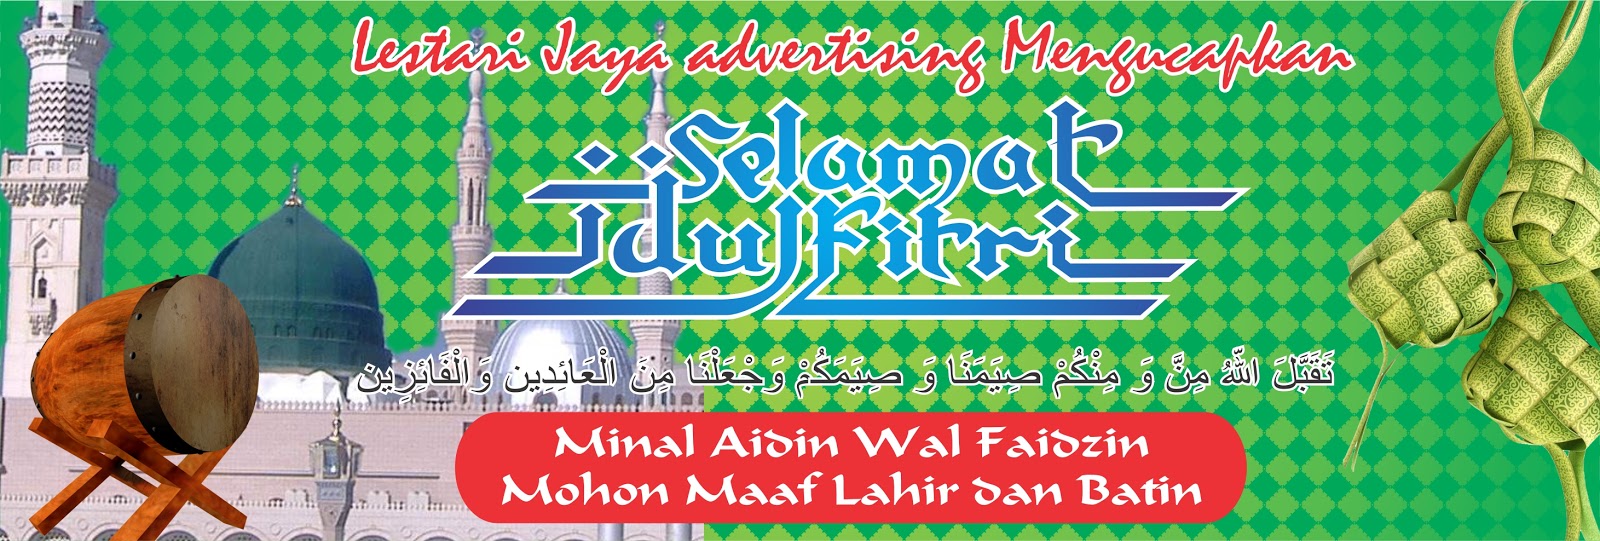 Contoh Banner Idul Fitri Cdr - Simak Gambar Berikut